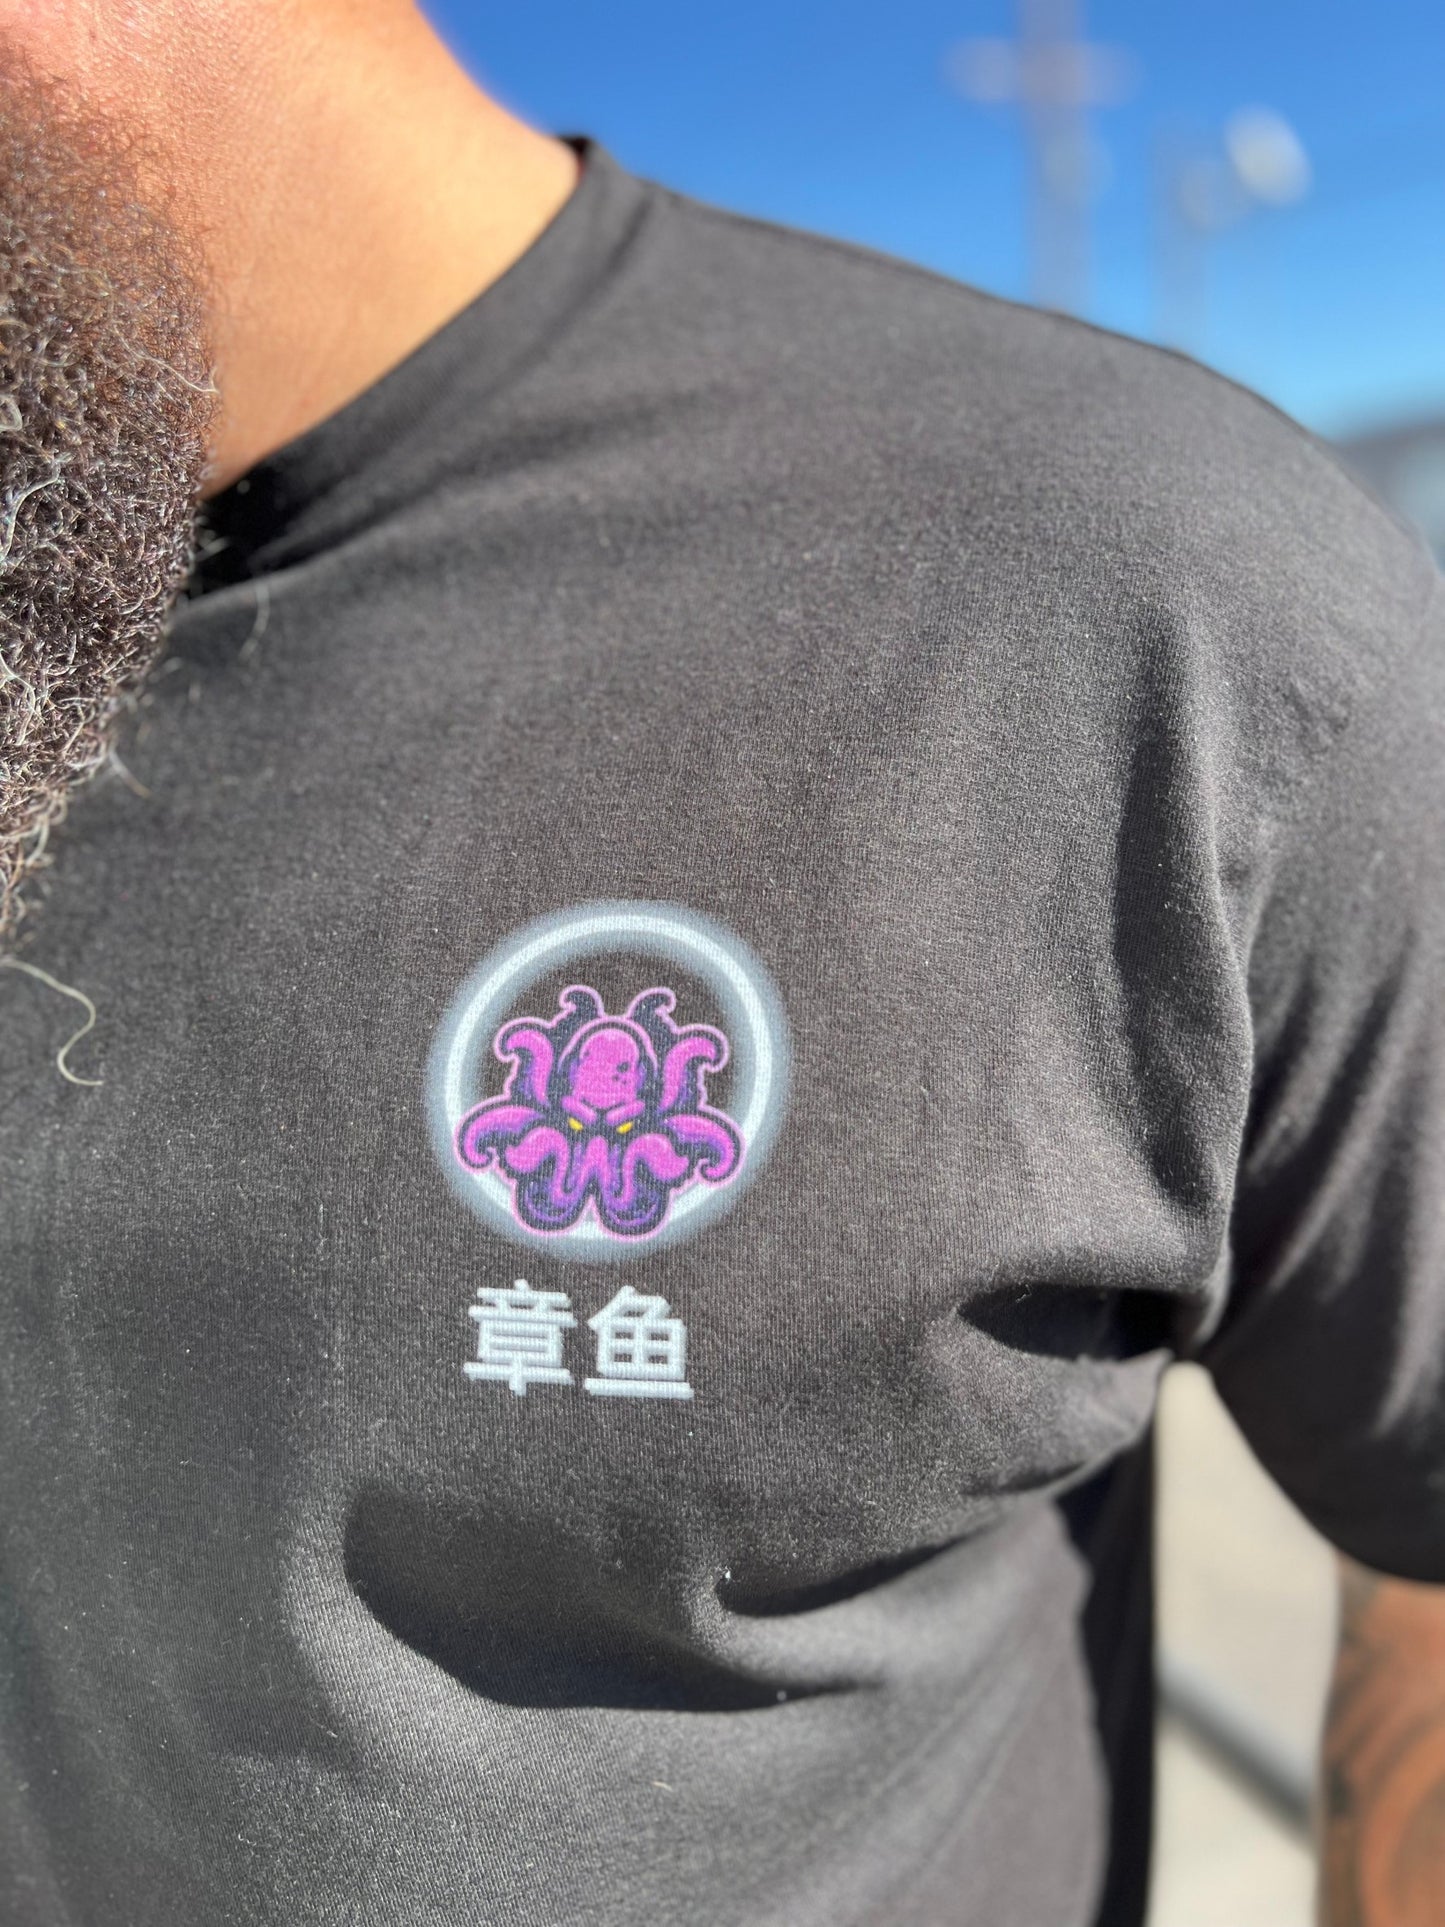 PBO 章鱼 (Zhāngyú) T-Shirt